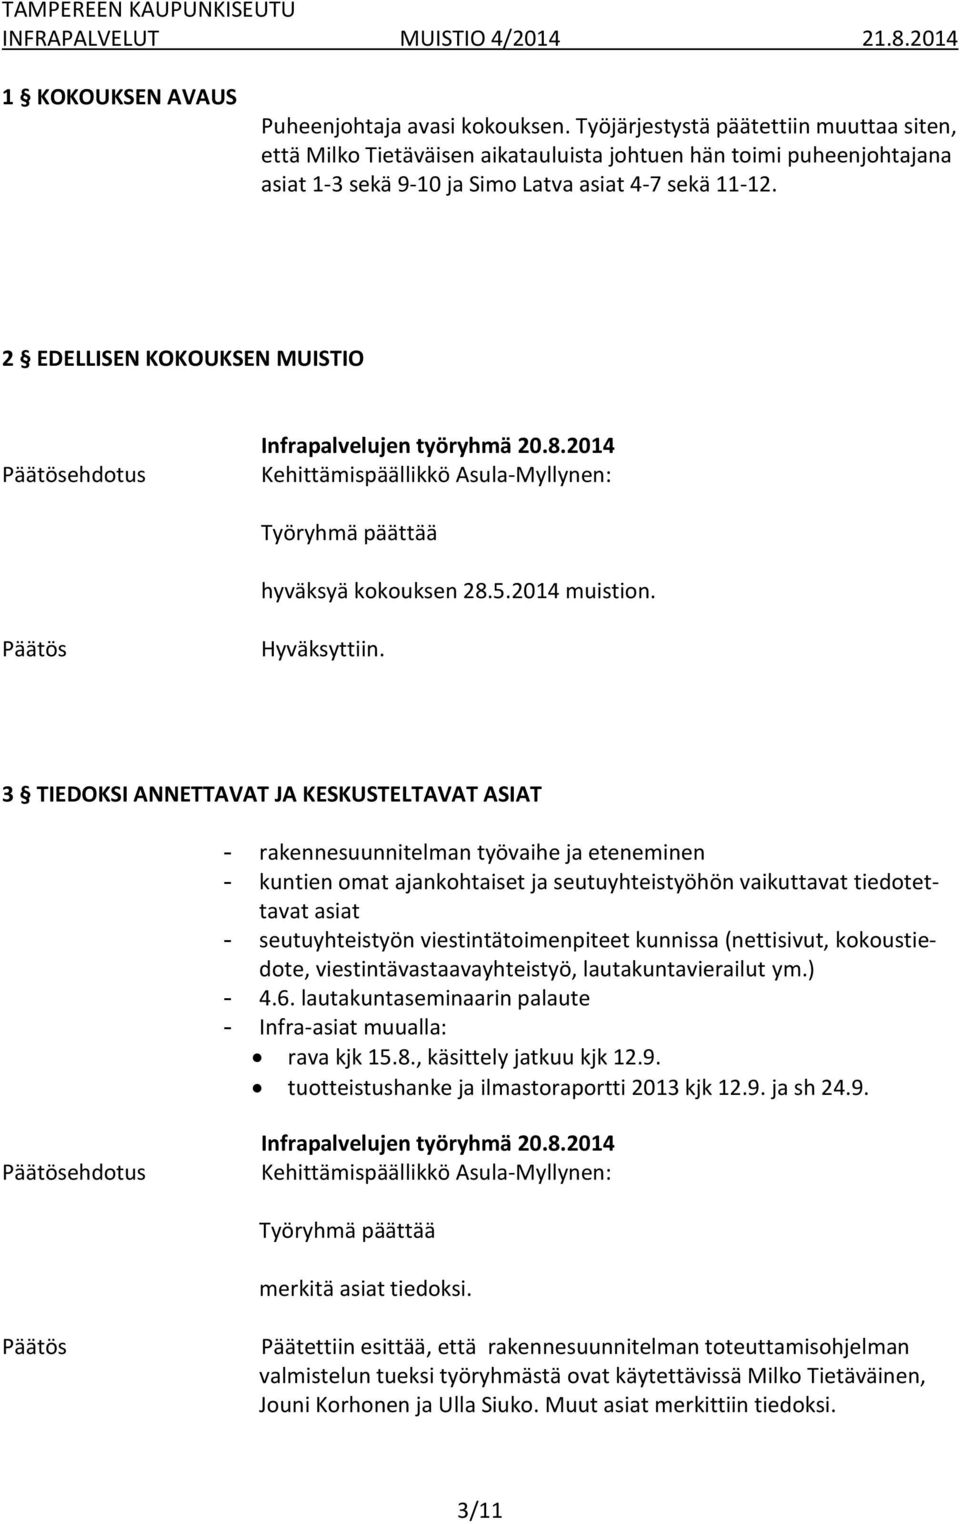 2 EDELLISEN KOKOUKSEN MUISTIO Työryhmä päättää hyväksyä kokouksen 28.5.2014 muistion. Hyväksyttiin.